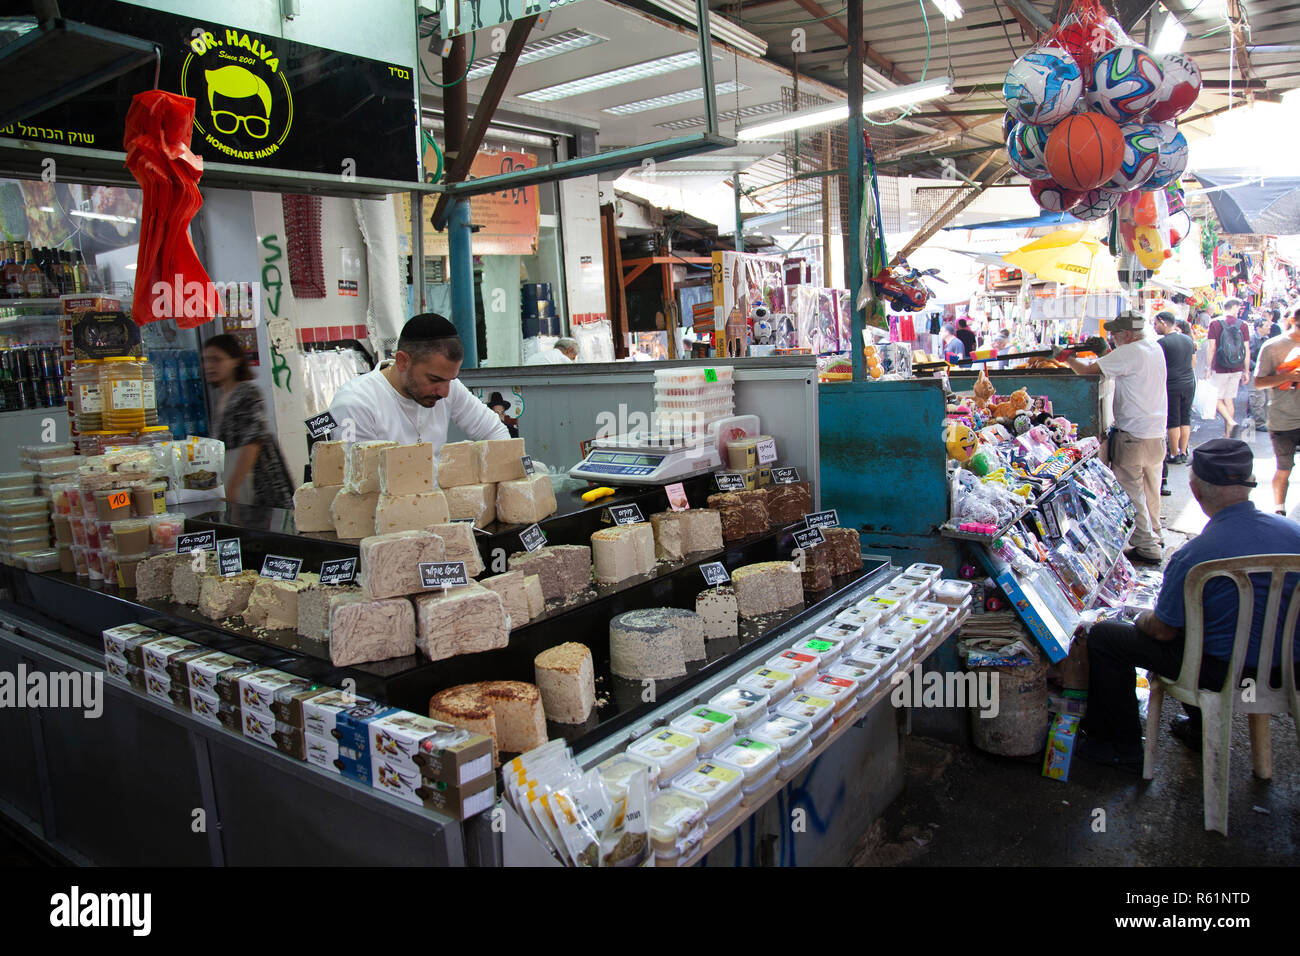 Halva Stall at Carmel Market in Tel Aviv, Israel Stock Photo